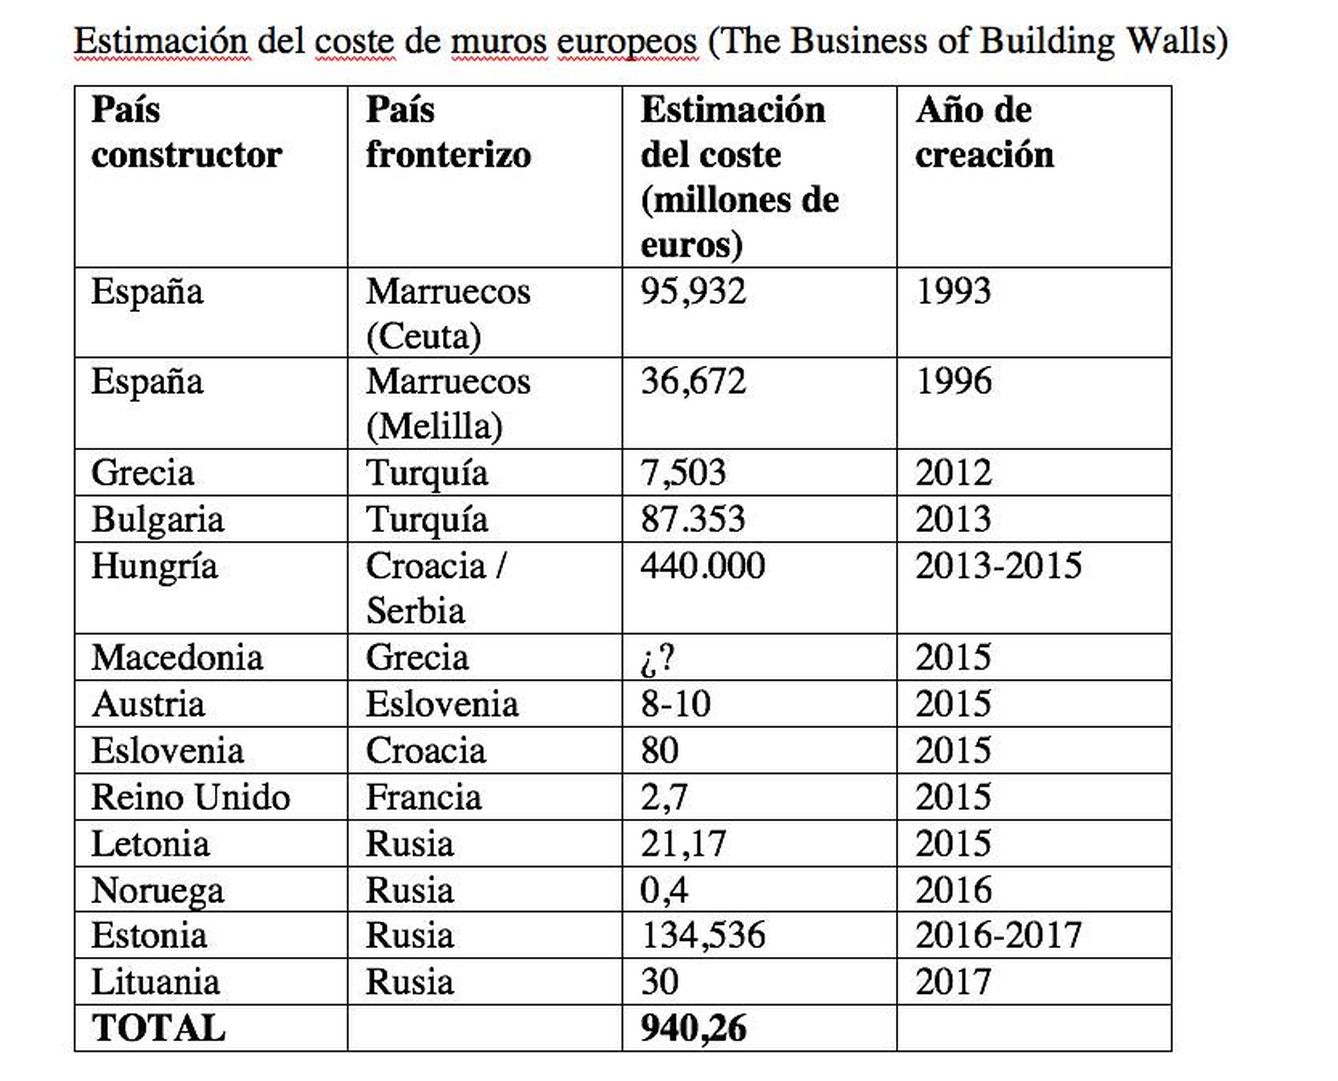 Estimación del coste de los muros europeos (The Business of Building Walls). Pinche en la imagen para ver la tabla al completo